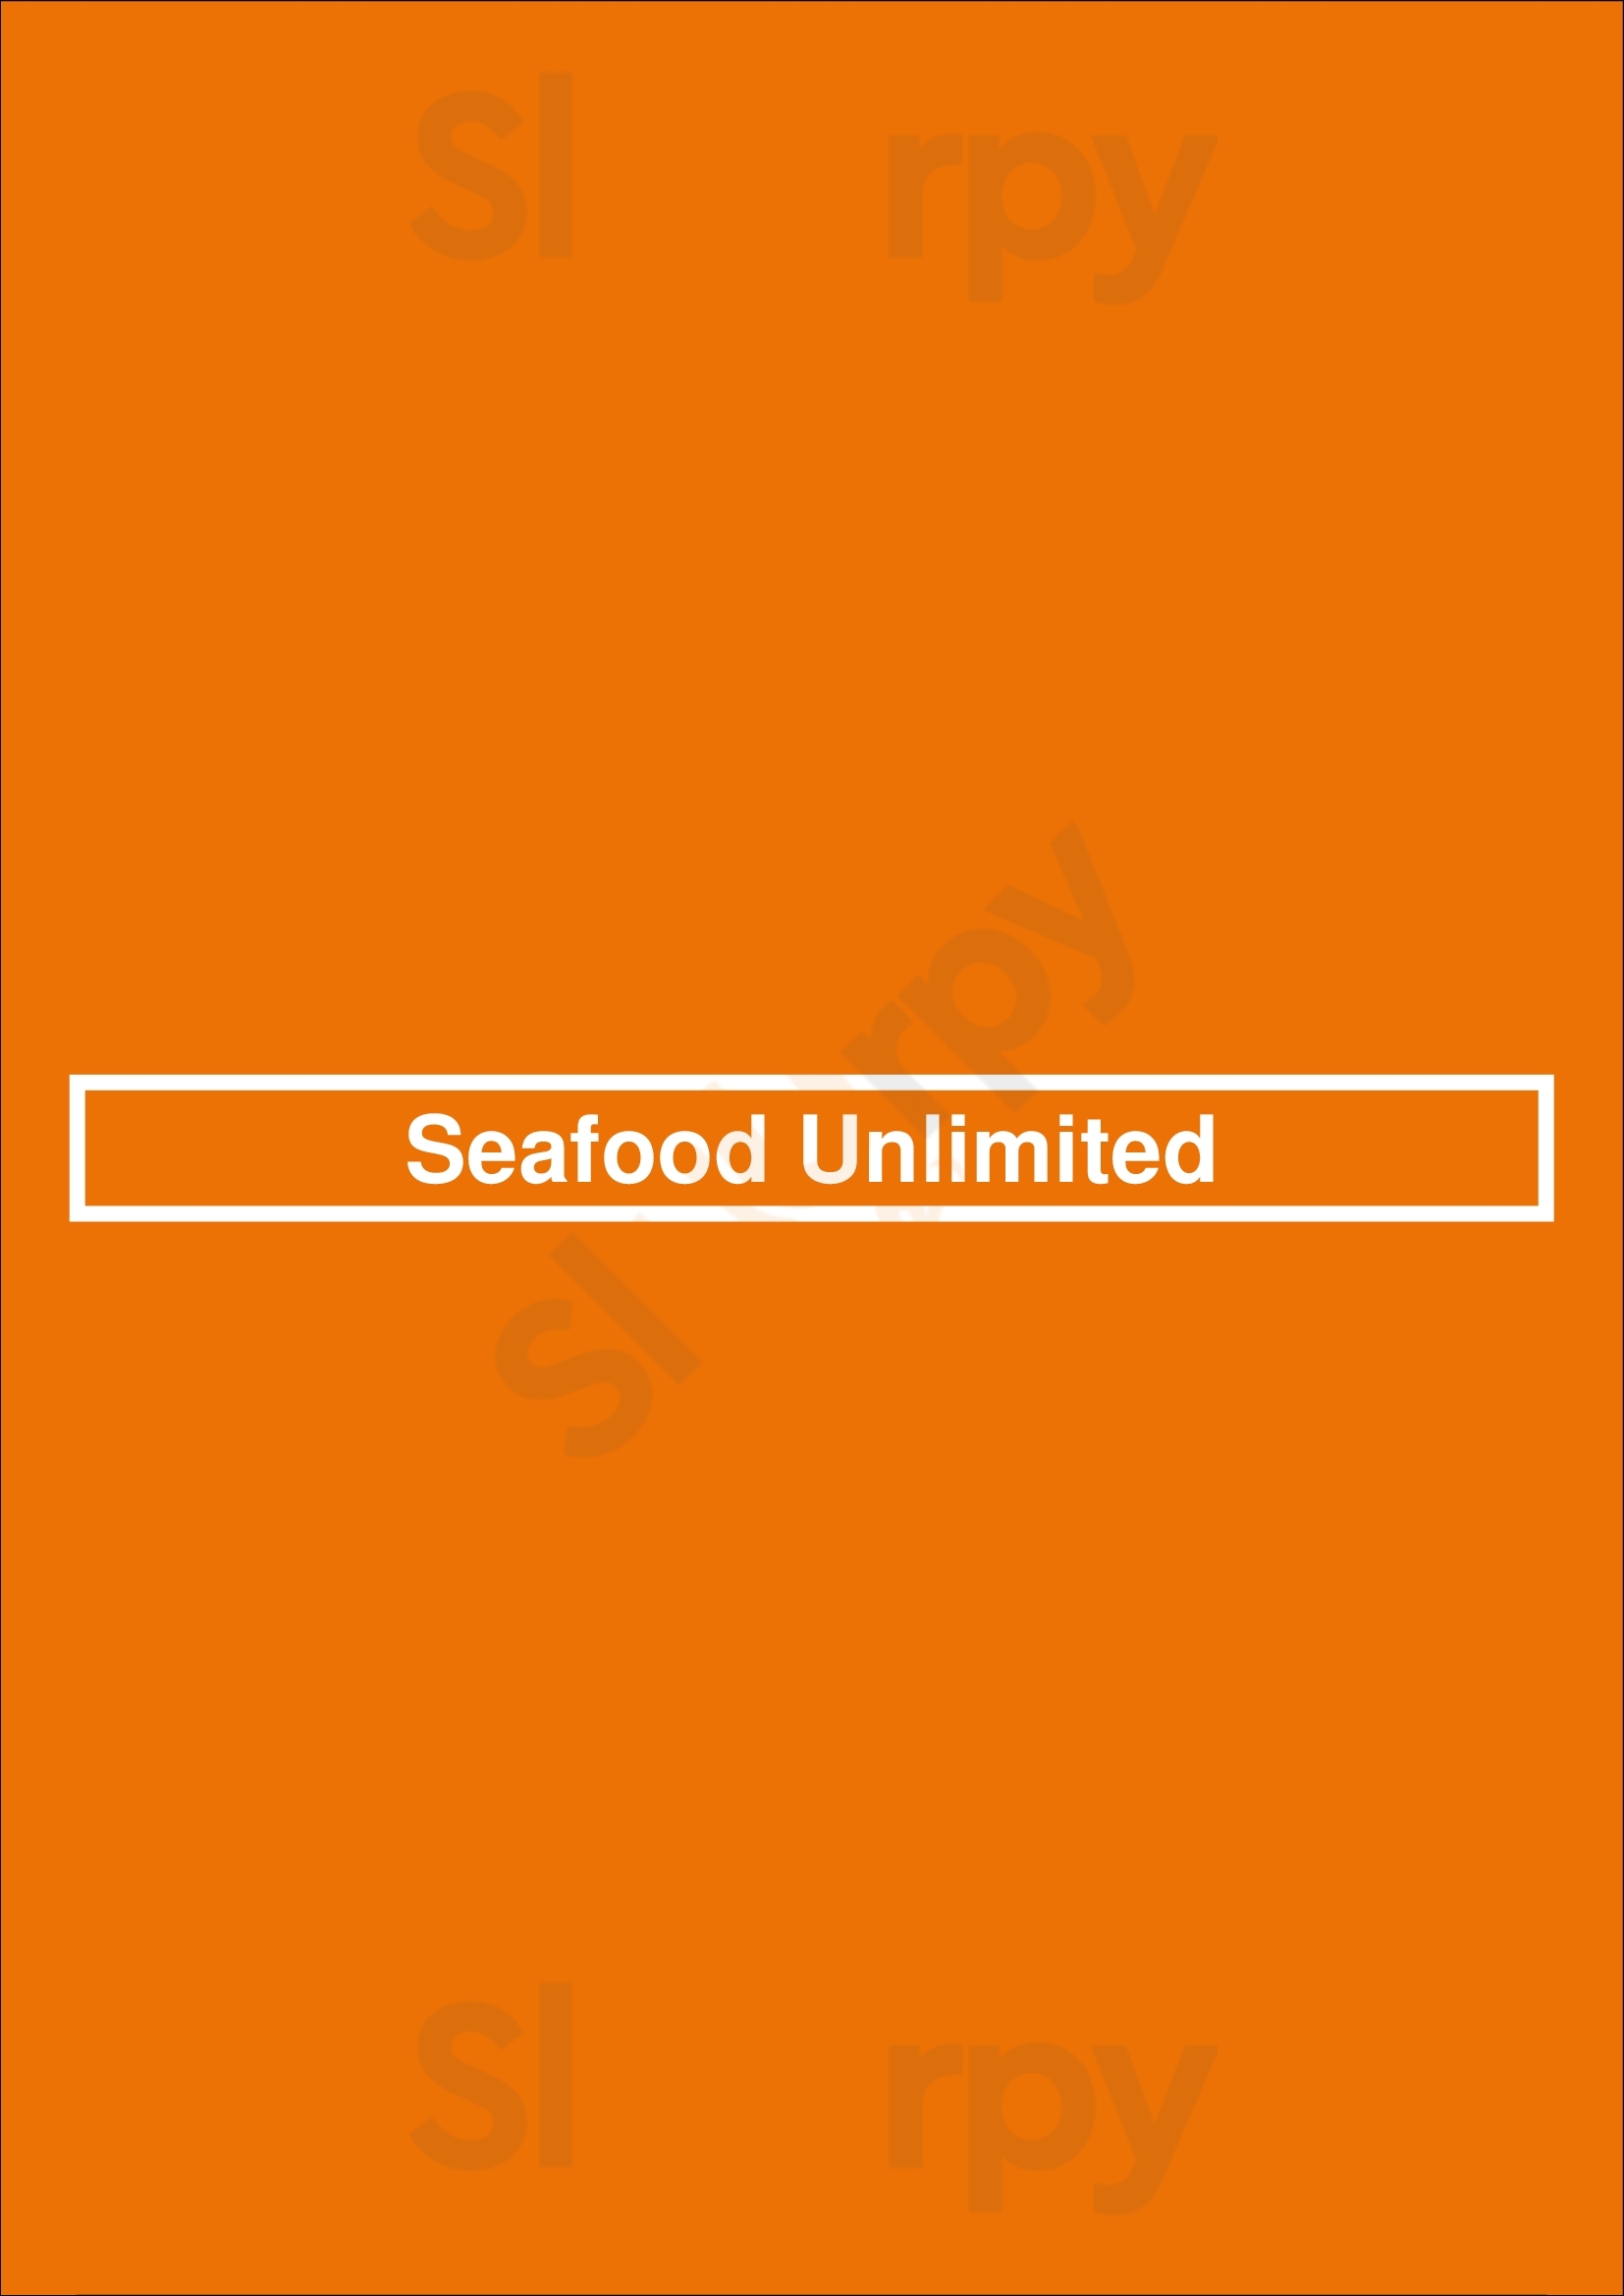 Seafood Unlimited Philadelphia Menu - 1